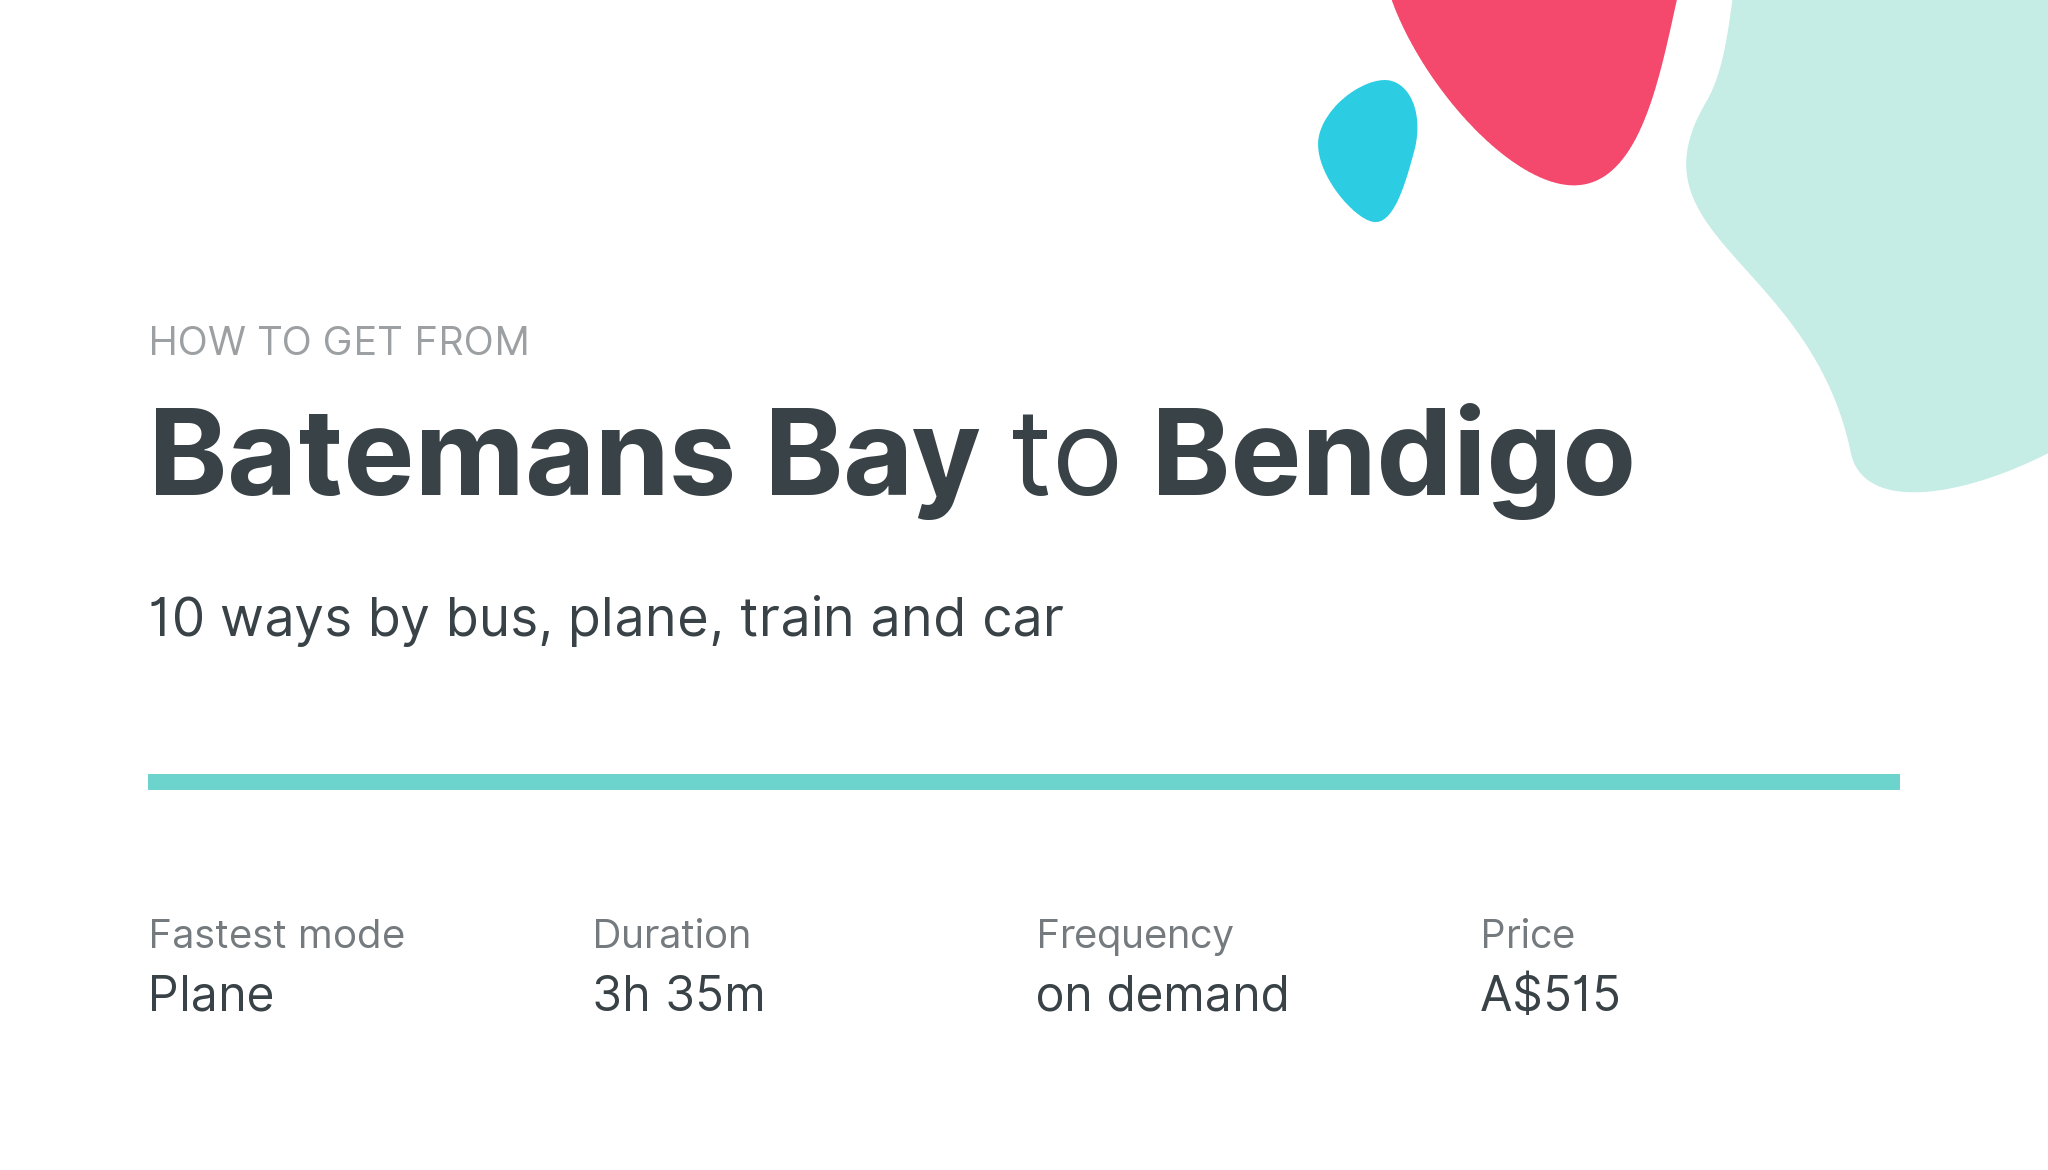 How do I get from Batemans Bay to Bendigo